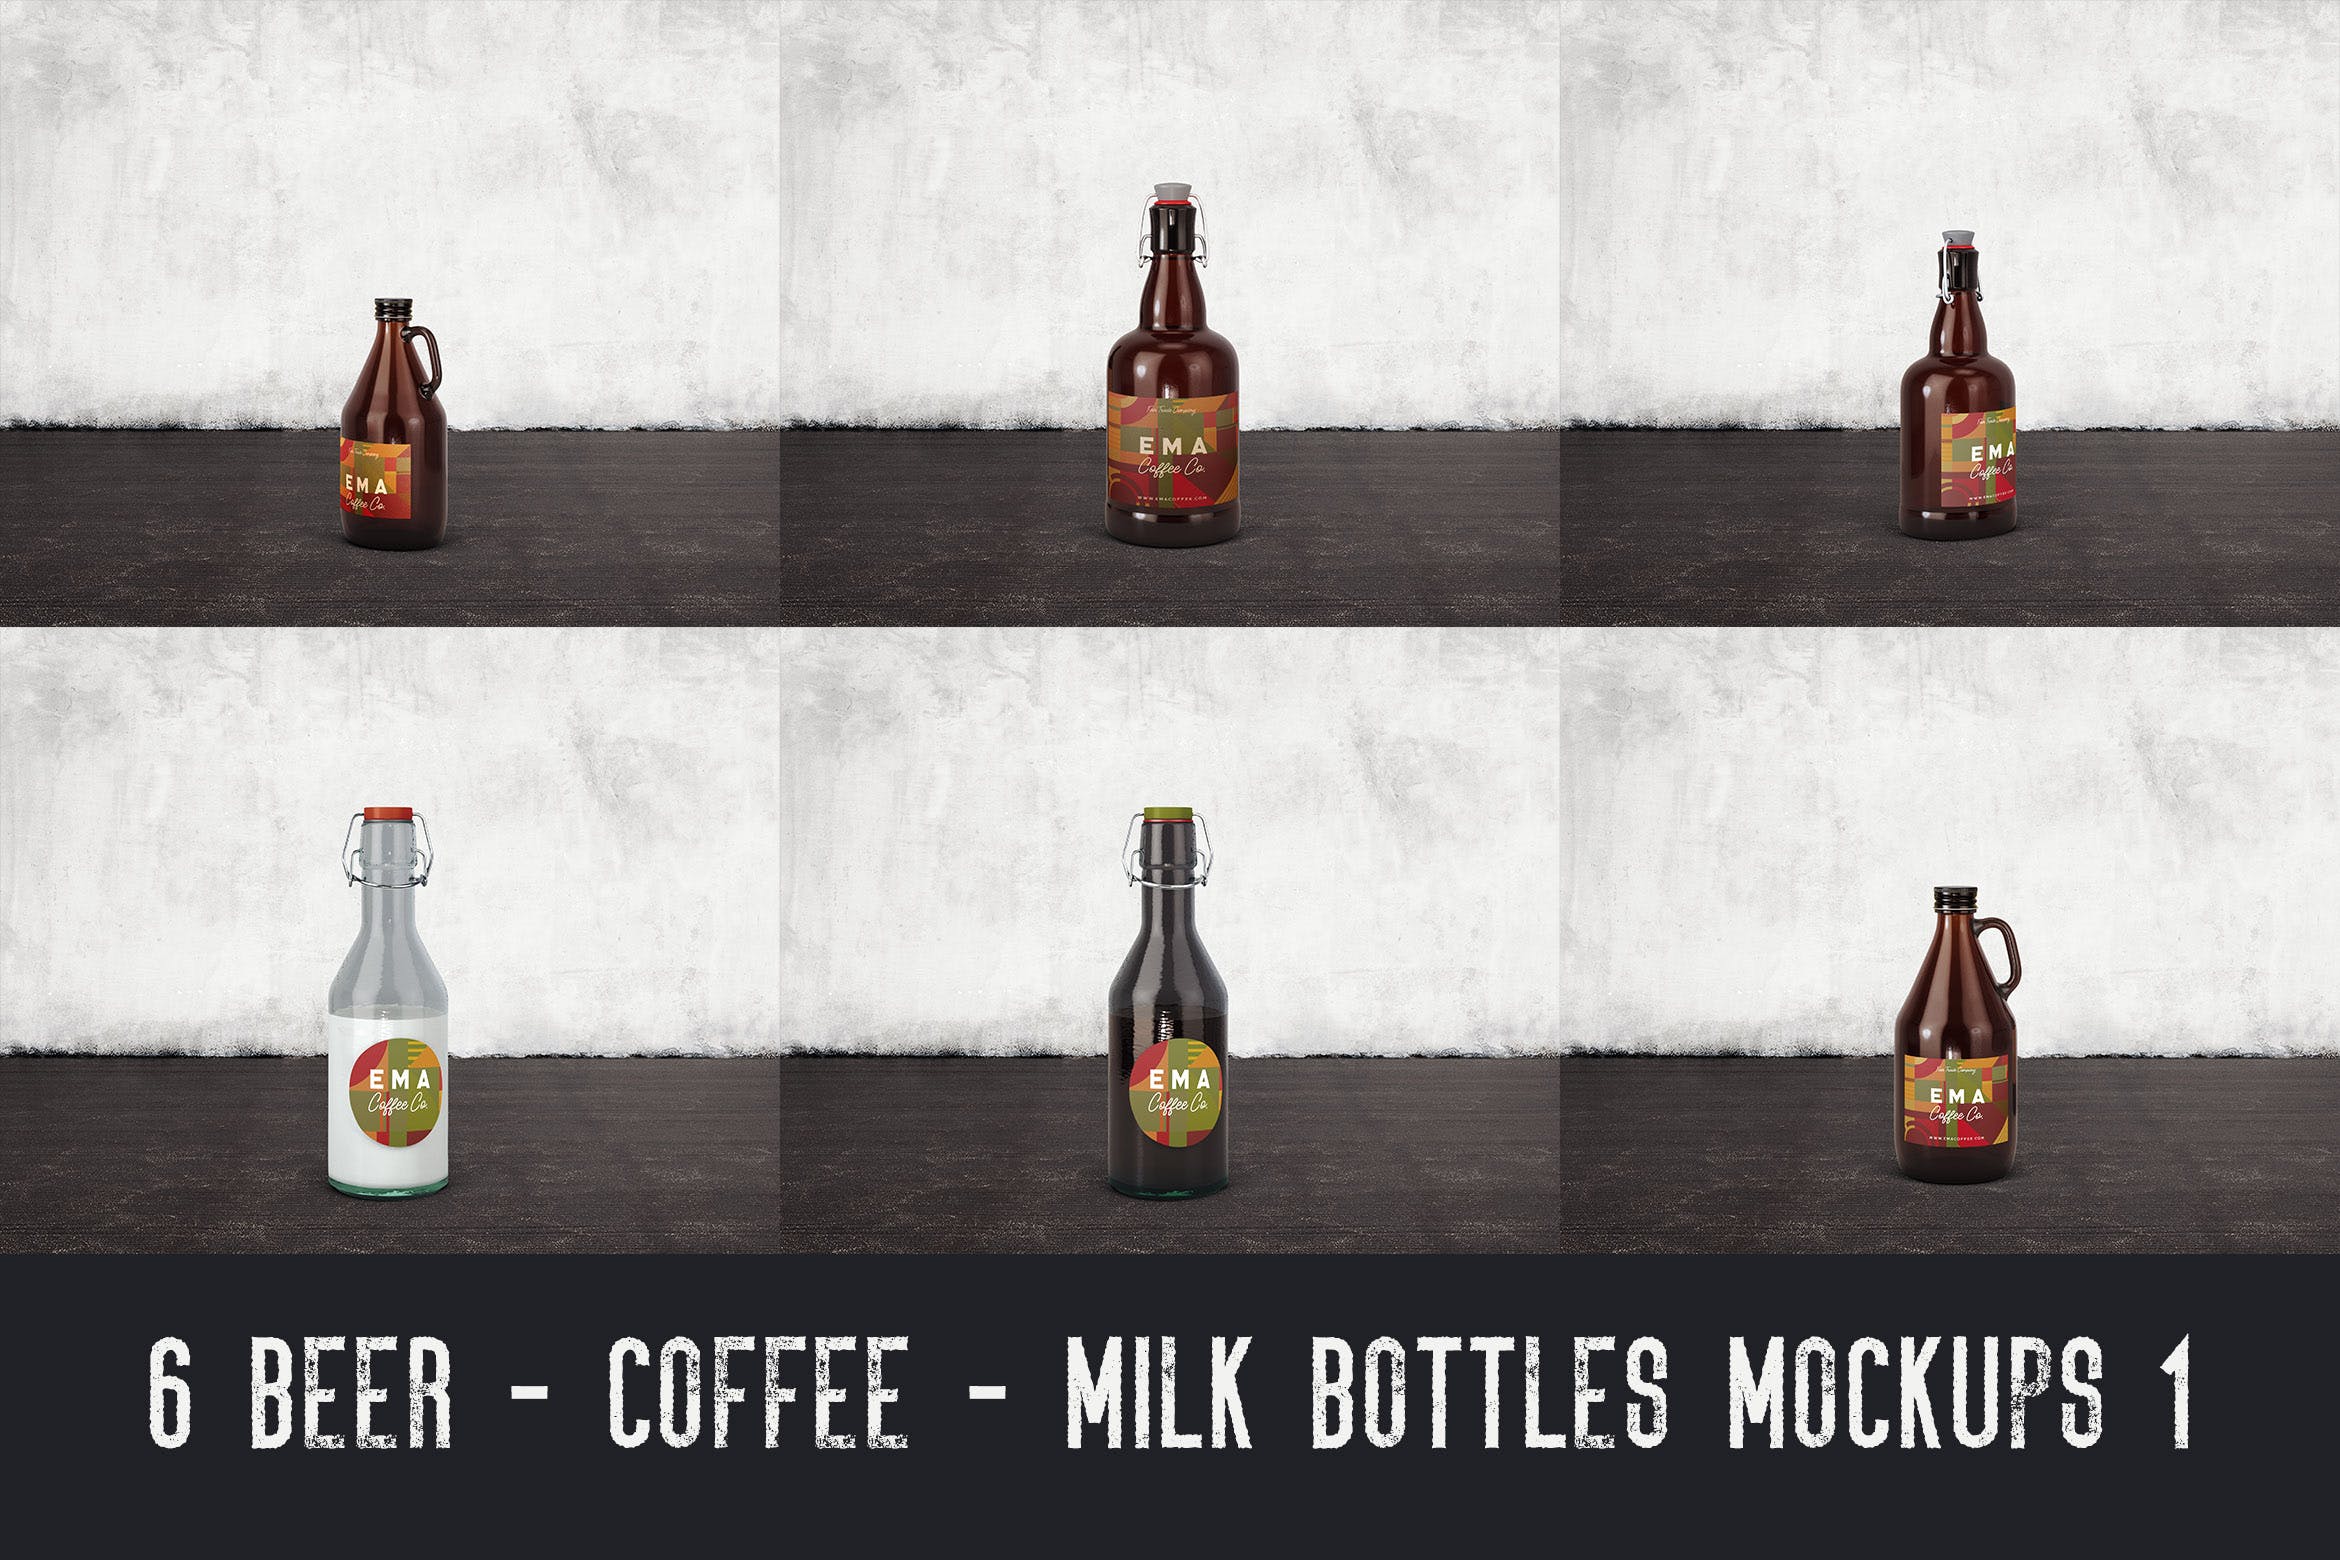 6个啤酒/咖啡/牛奶瓶外观设计非凡图库精选v1 6 Beer Coffee Milk Bottles Mockups 1插图